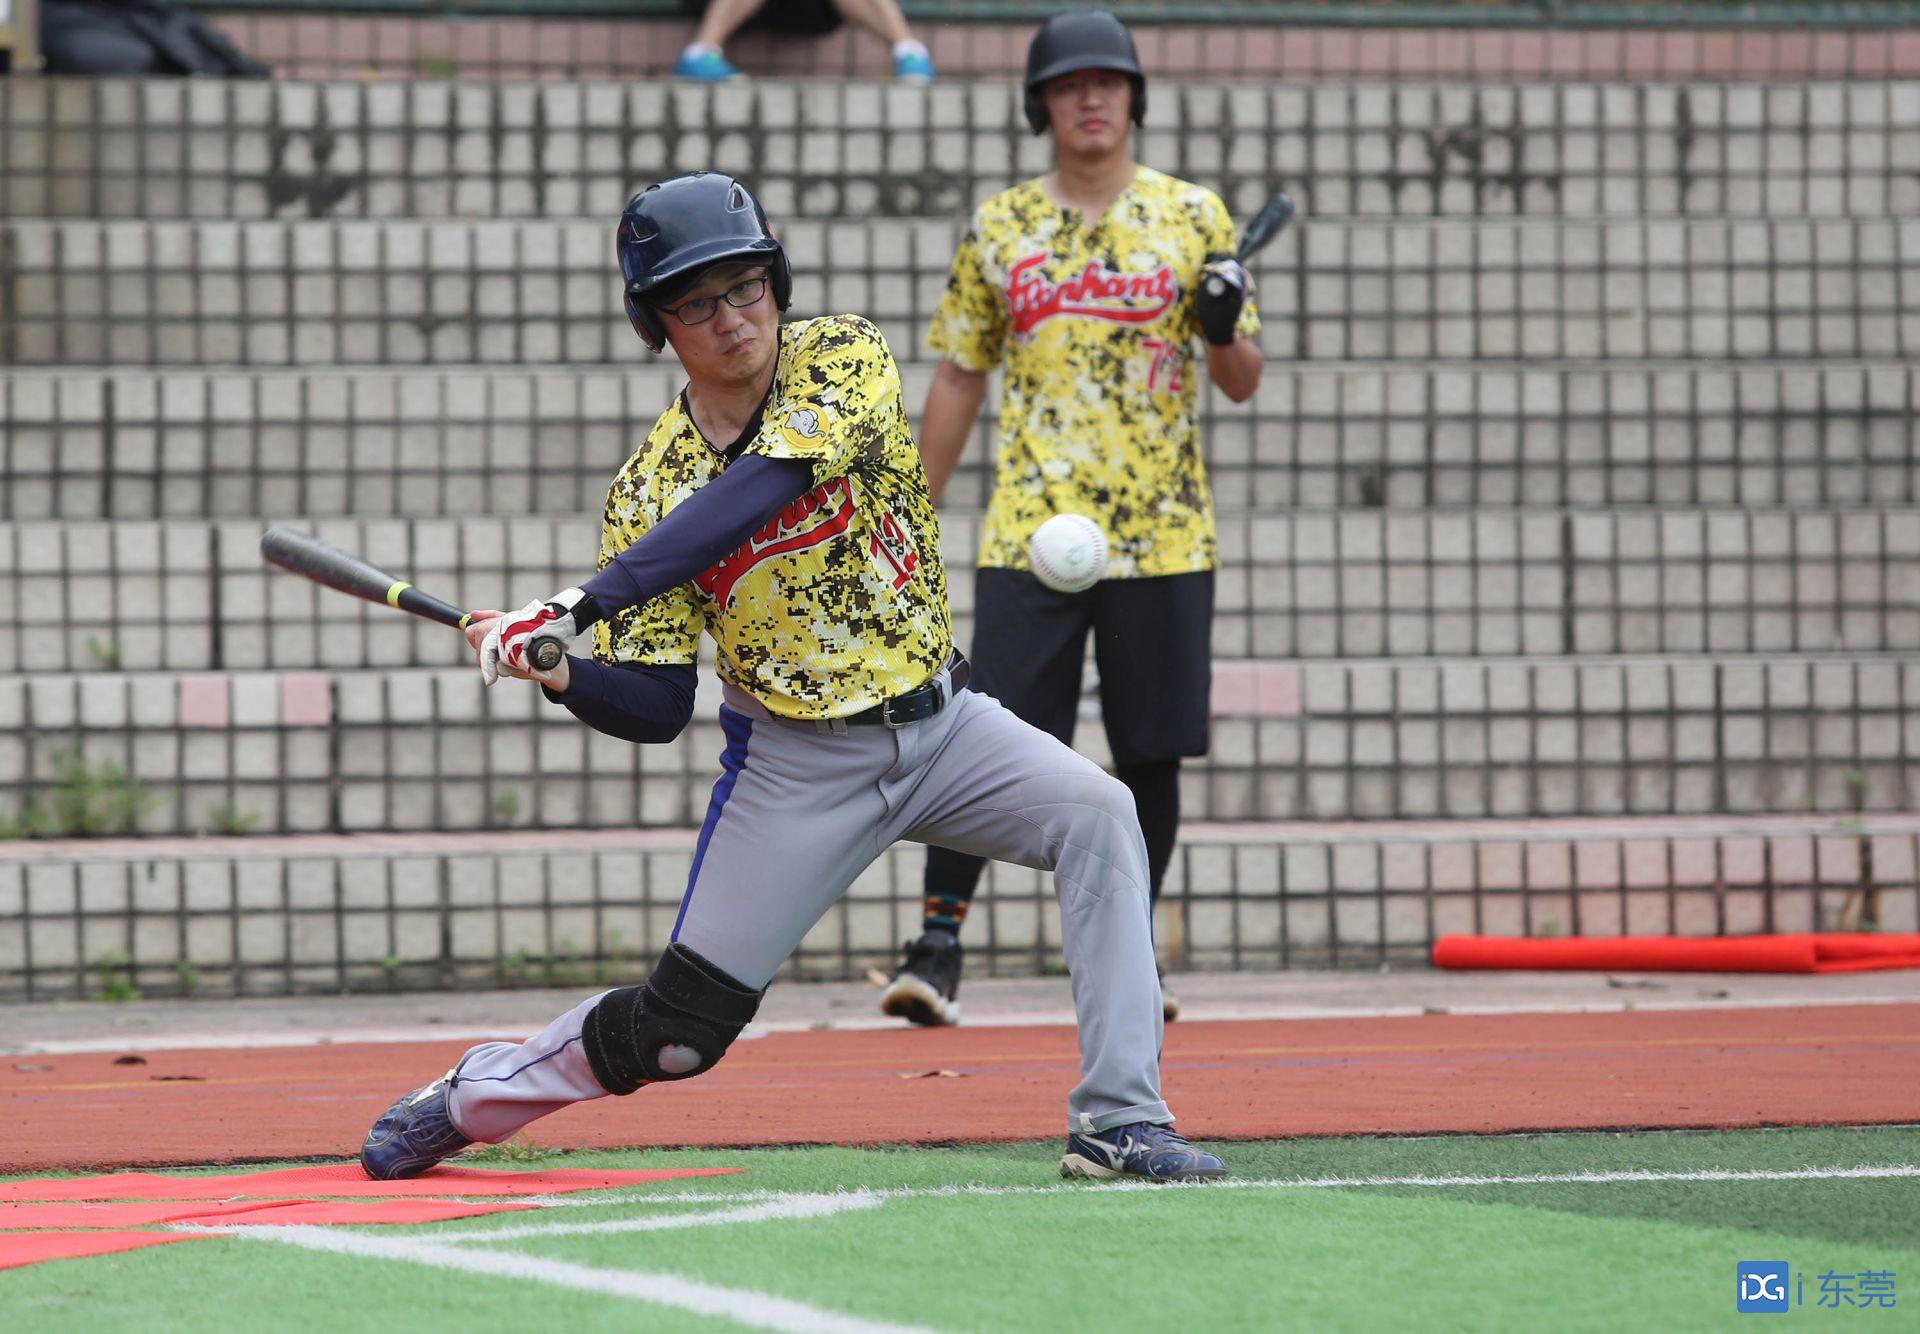 掷垒球图片 2019年“熊猫杯”中国慢投垒球企业联赛东莞协会“广东海纳”分站赛在松山湖打响